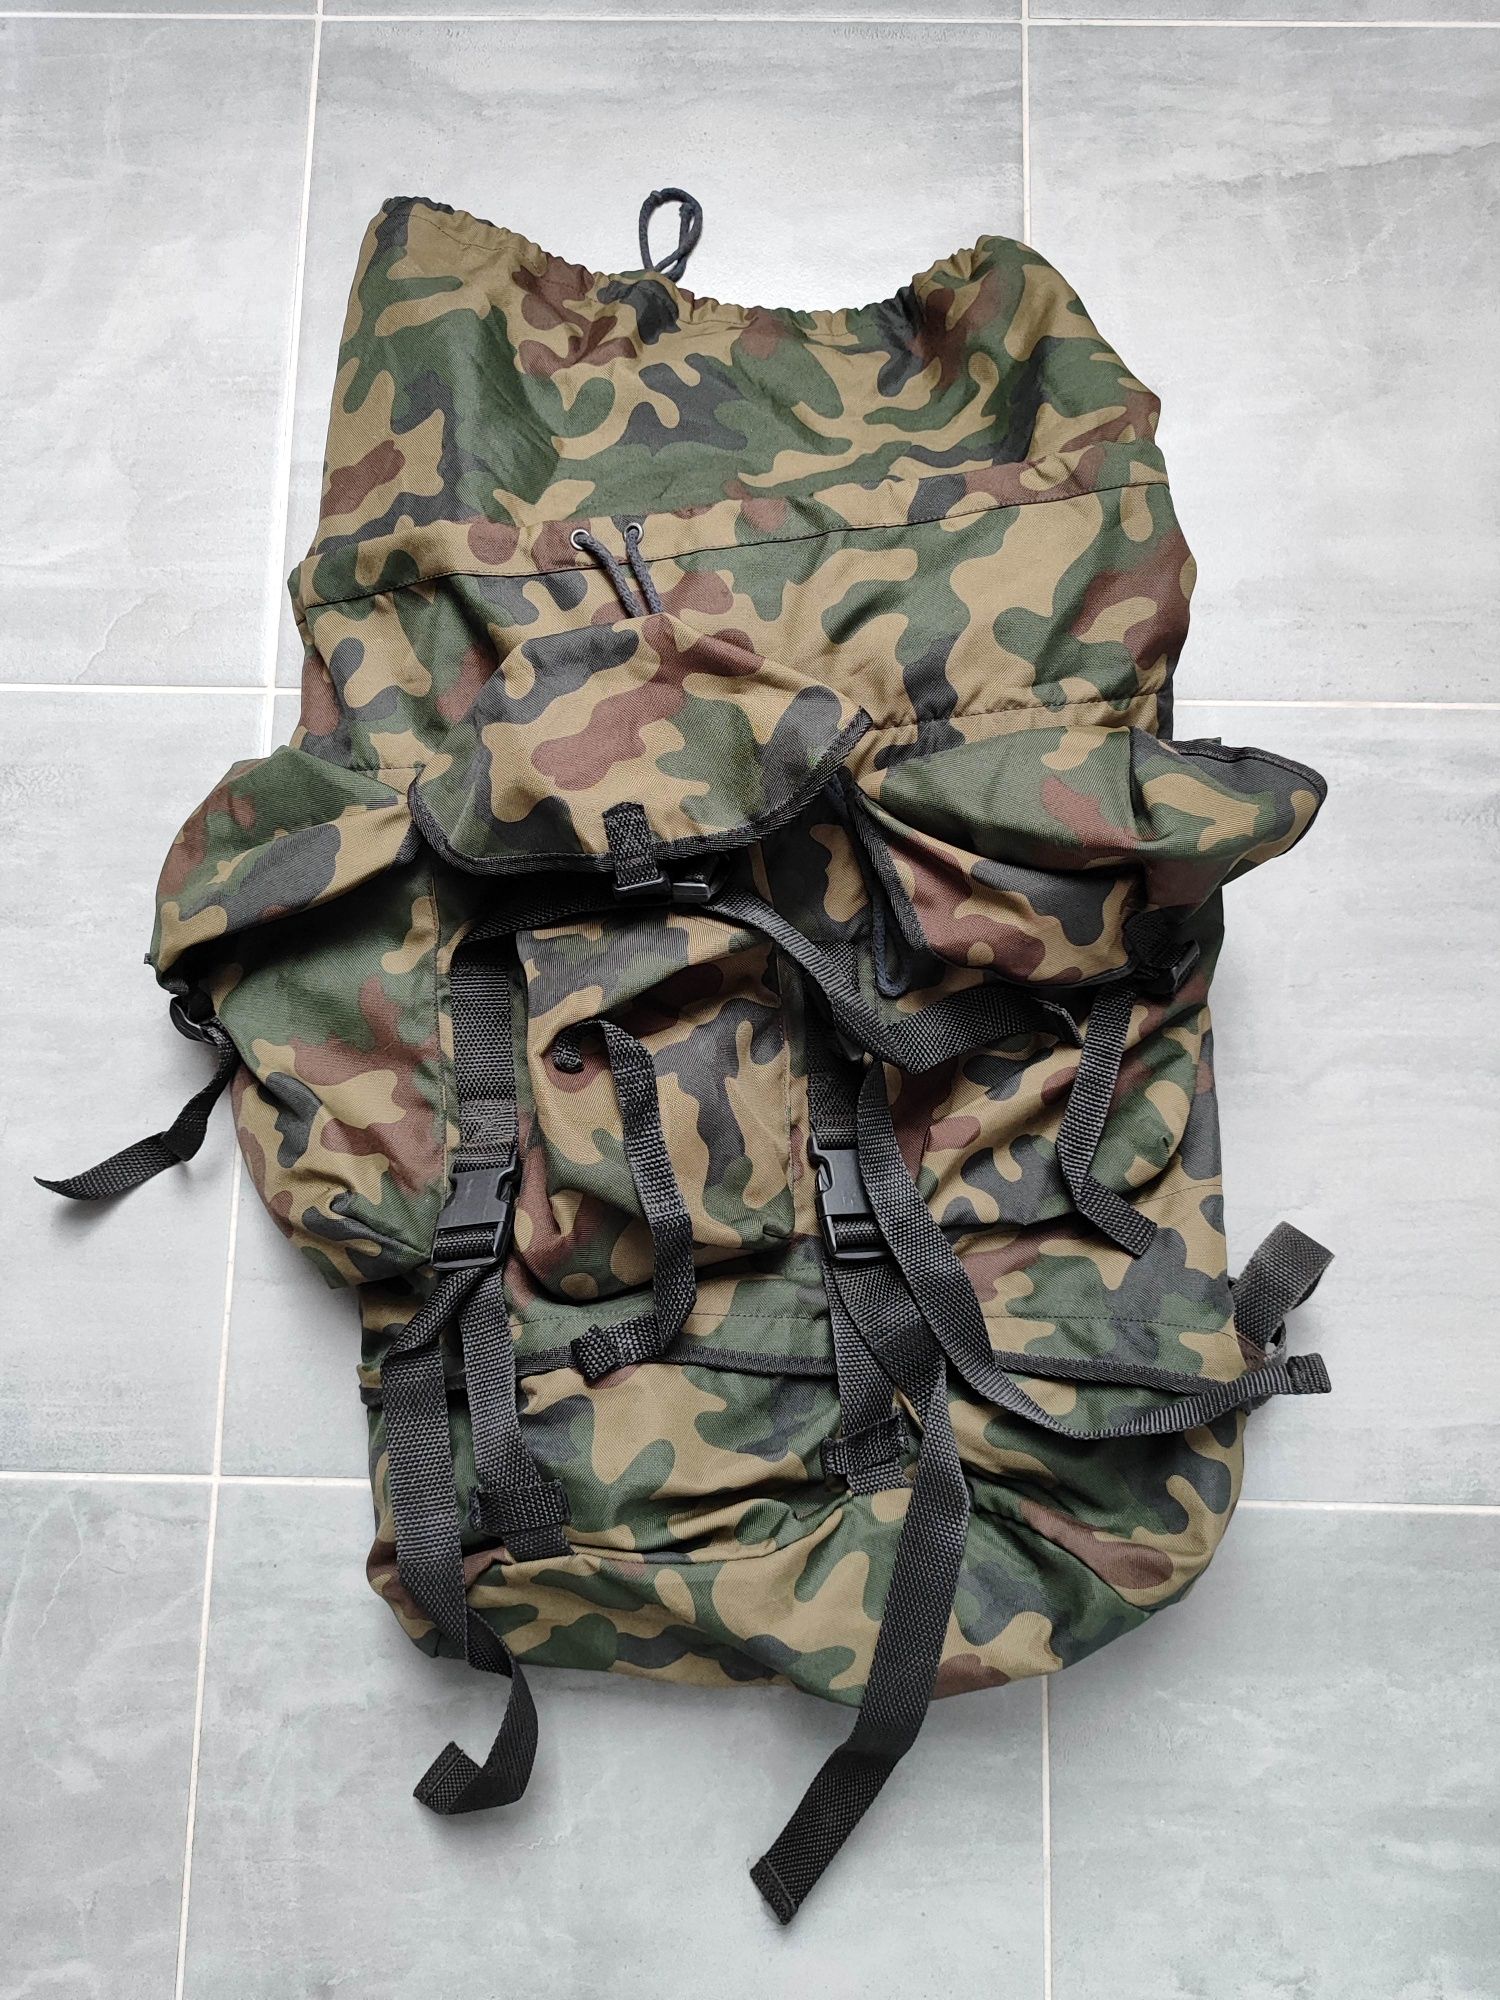 Plecak zasobnik wojskowy żołnierski wz97 kamuflaż wz 93 pantera